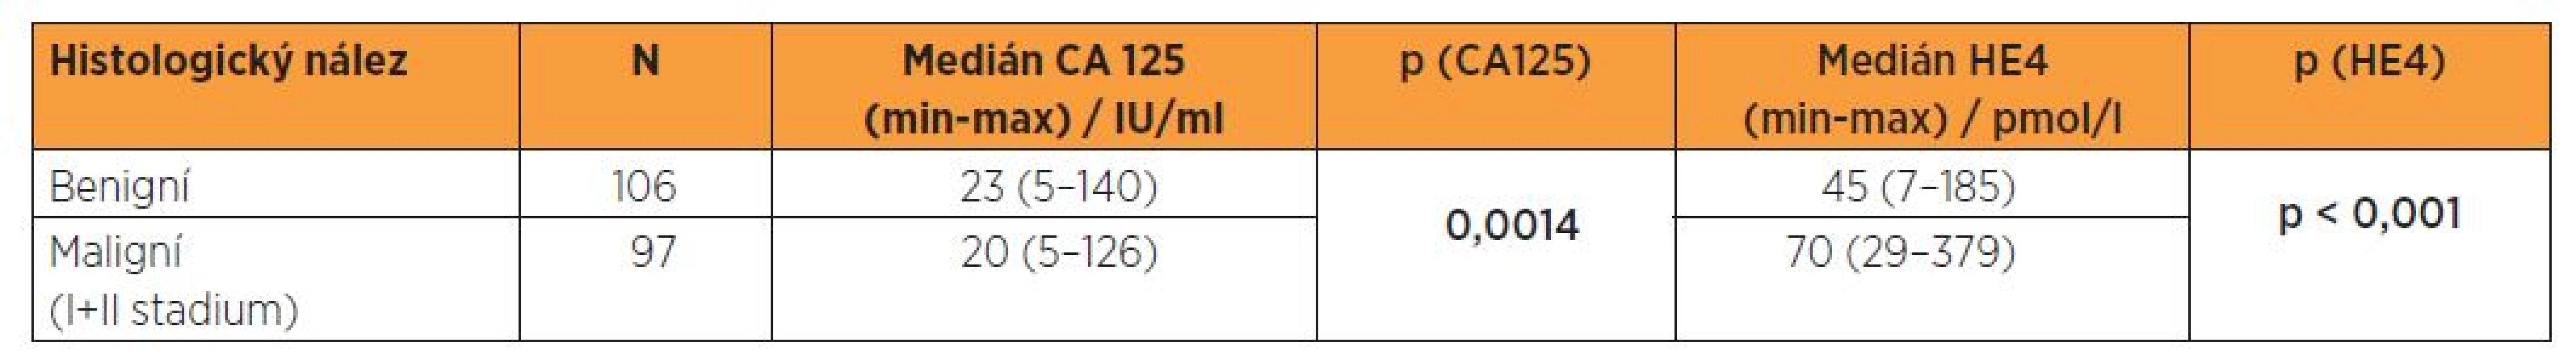 Sérová hladina CA 125 a HE4 ve vztahu k histologickému nálezu - Kolmogorovův-Smirnovův test (meziskupinová porovnání)